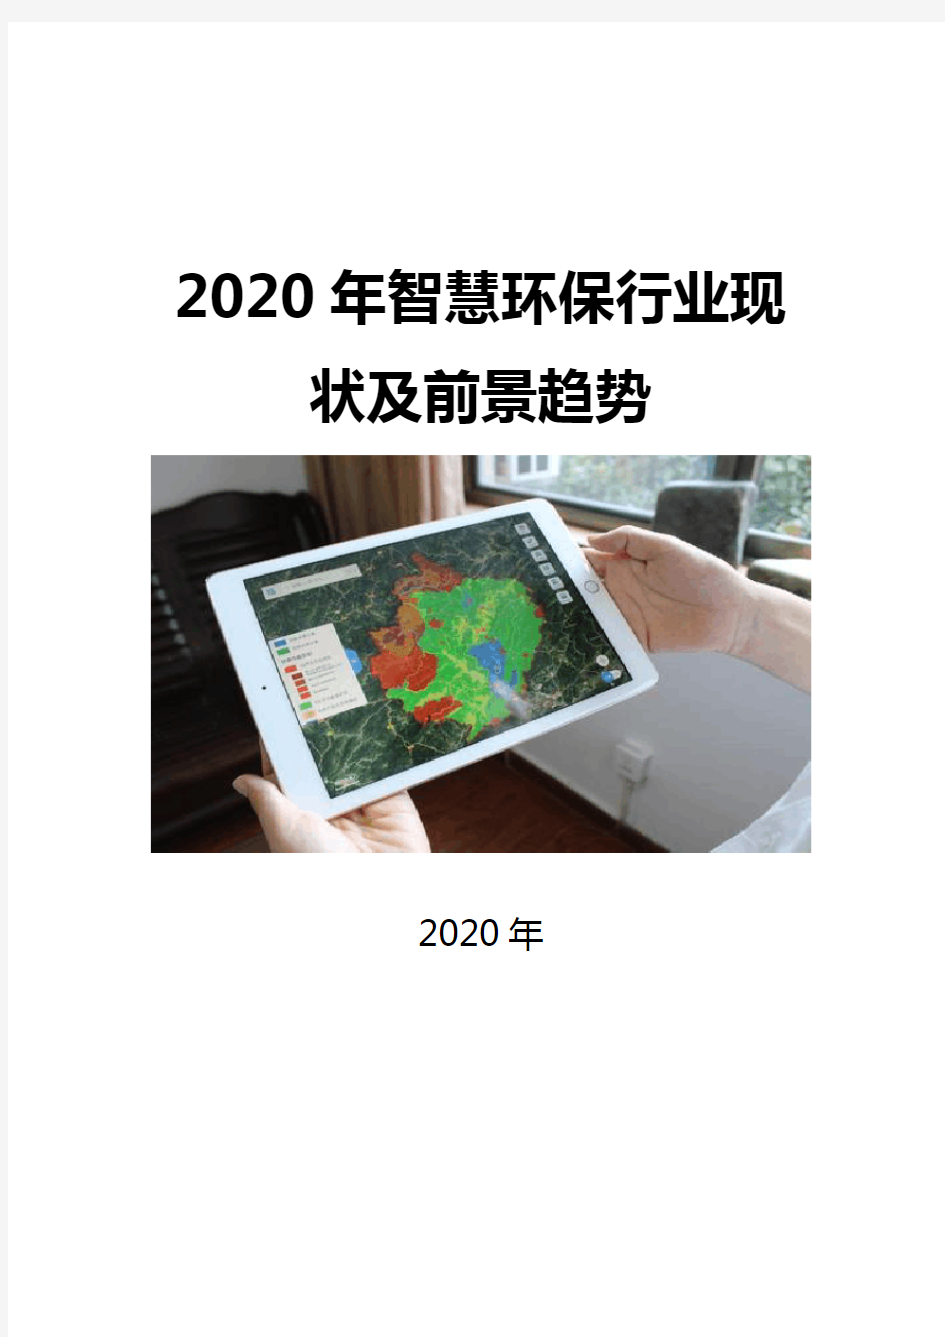 2020智慧环保行业现状及前景趋势